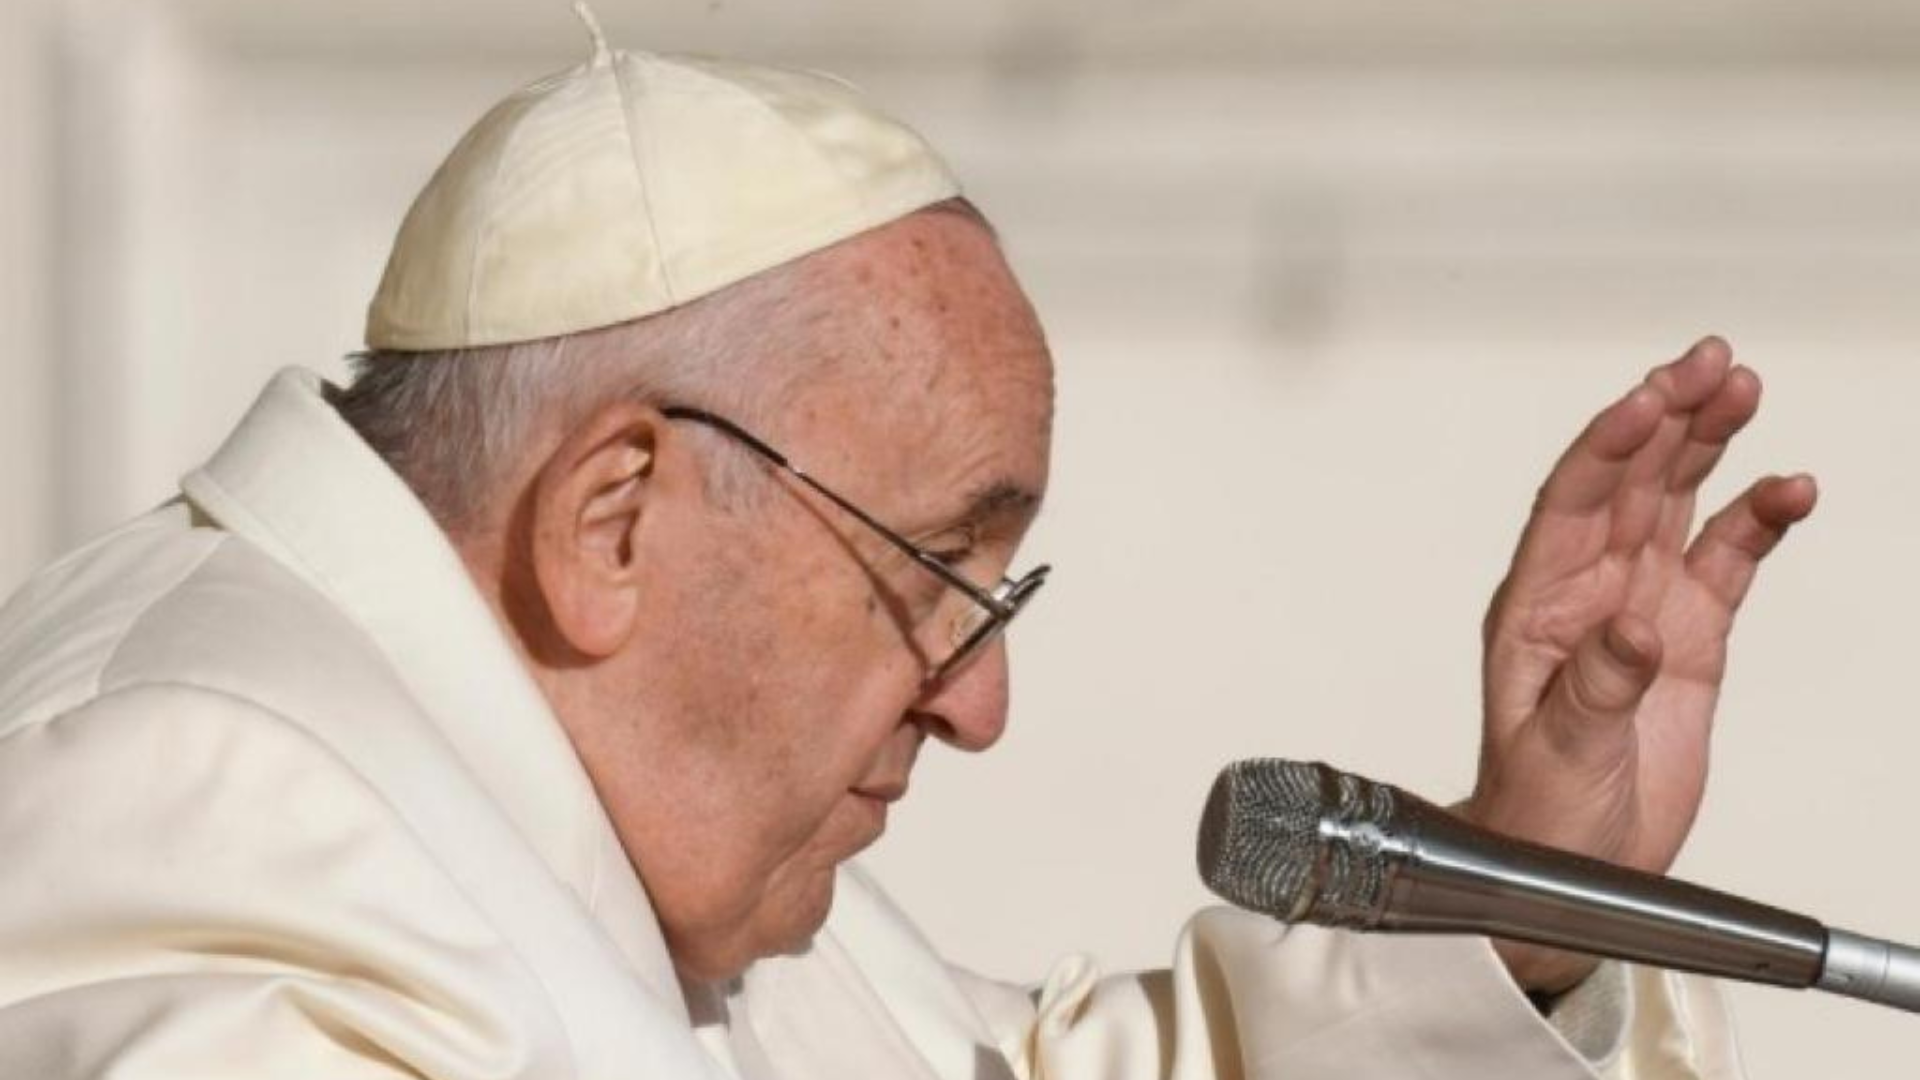 Papa Francesco scherza e ispira: “Non dobbiamo abituarci al male, così diventiamo complici”